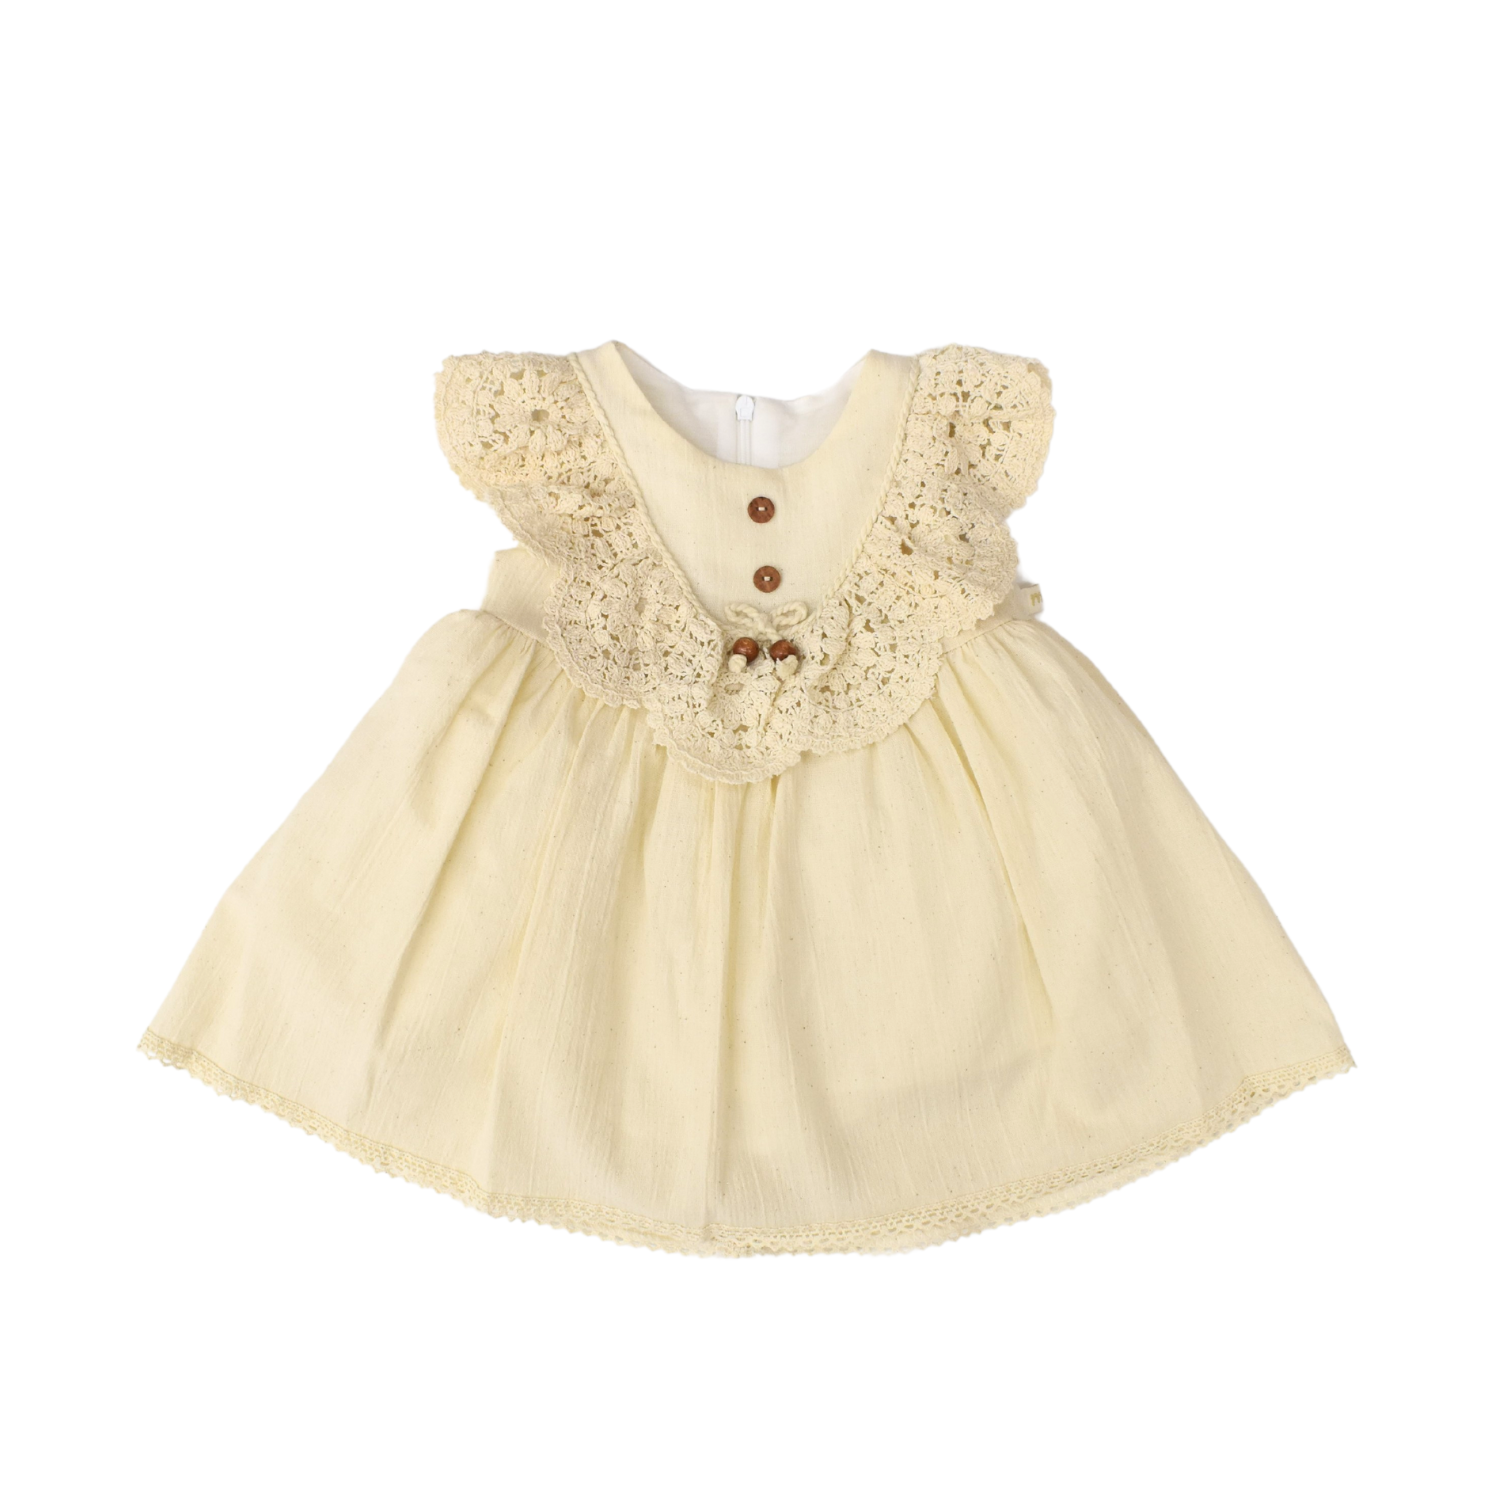 Gia's Chic Baby Dress